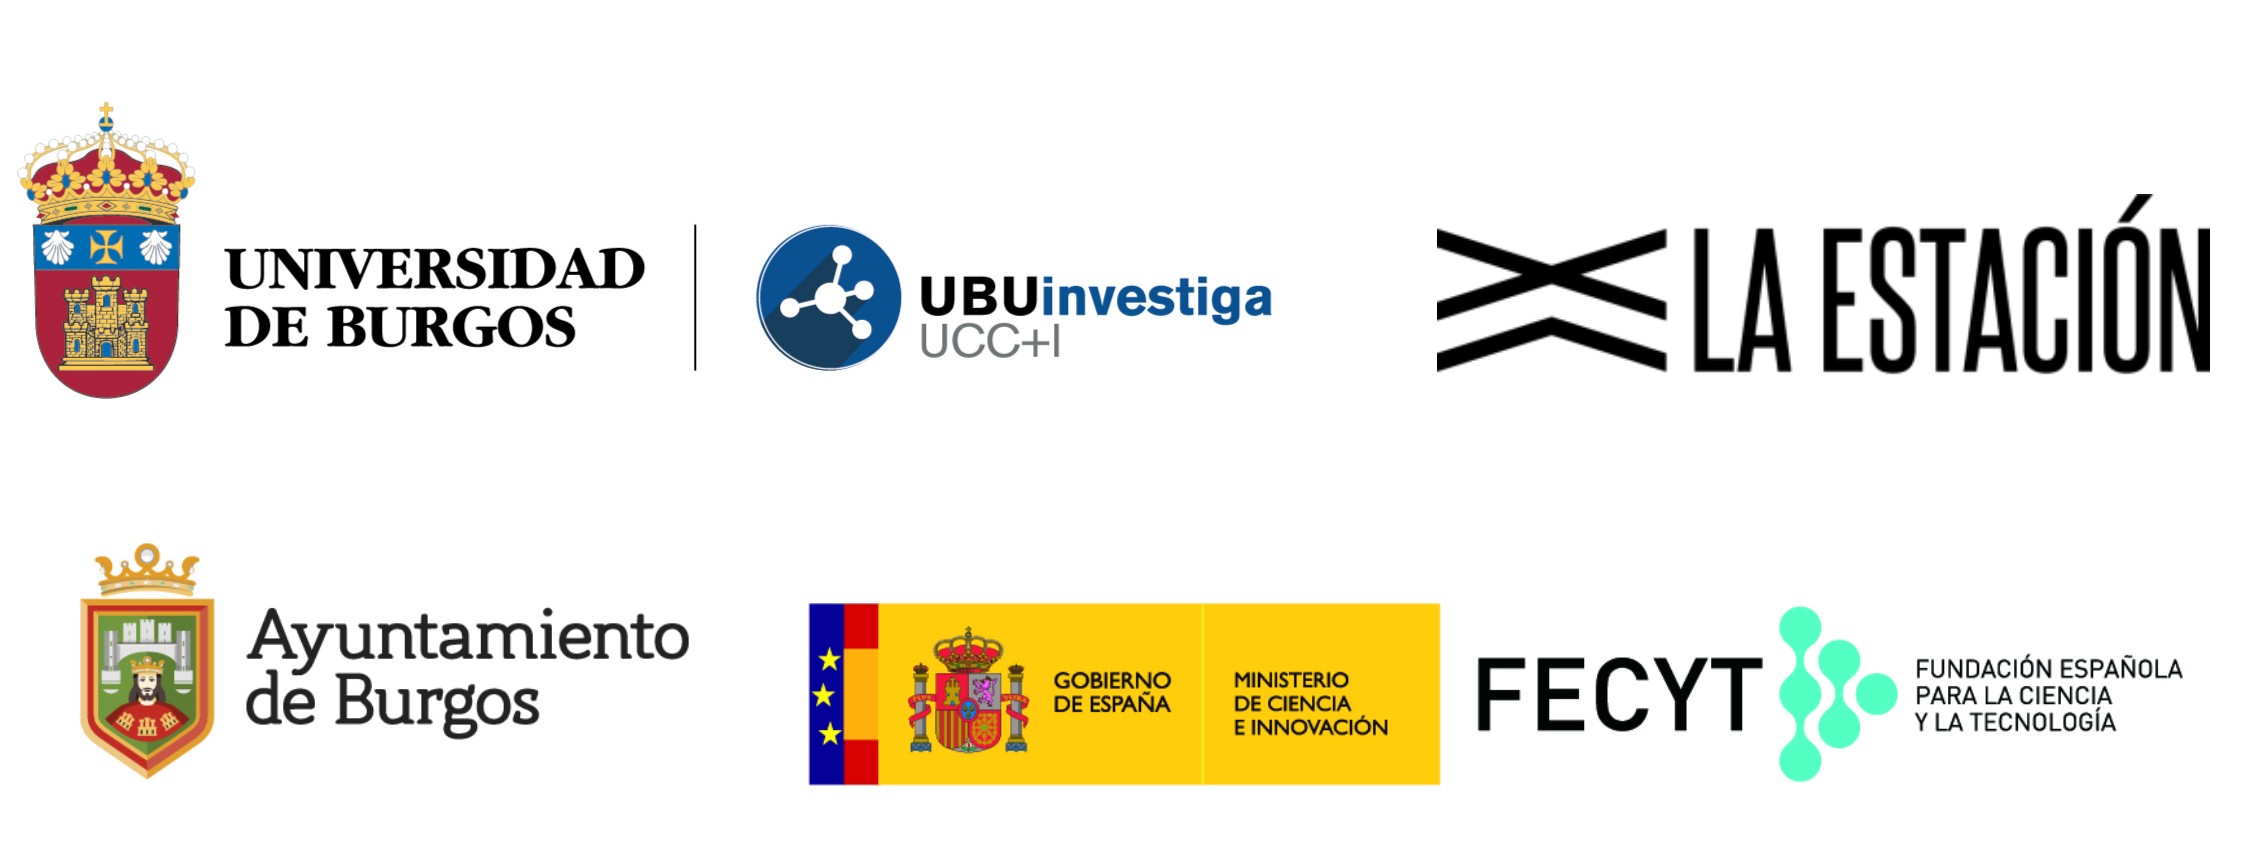 Unidad de Cultura Científica e Innovación de la Universidad de Burgos - La Estación - Ayuntamiento de Burgos y la Fundación Española para la Ciencia y la Tecnología (FECYT) - Ministerio de Ciencia e Innovación. 